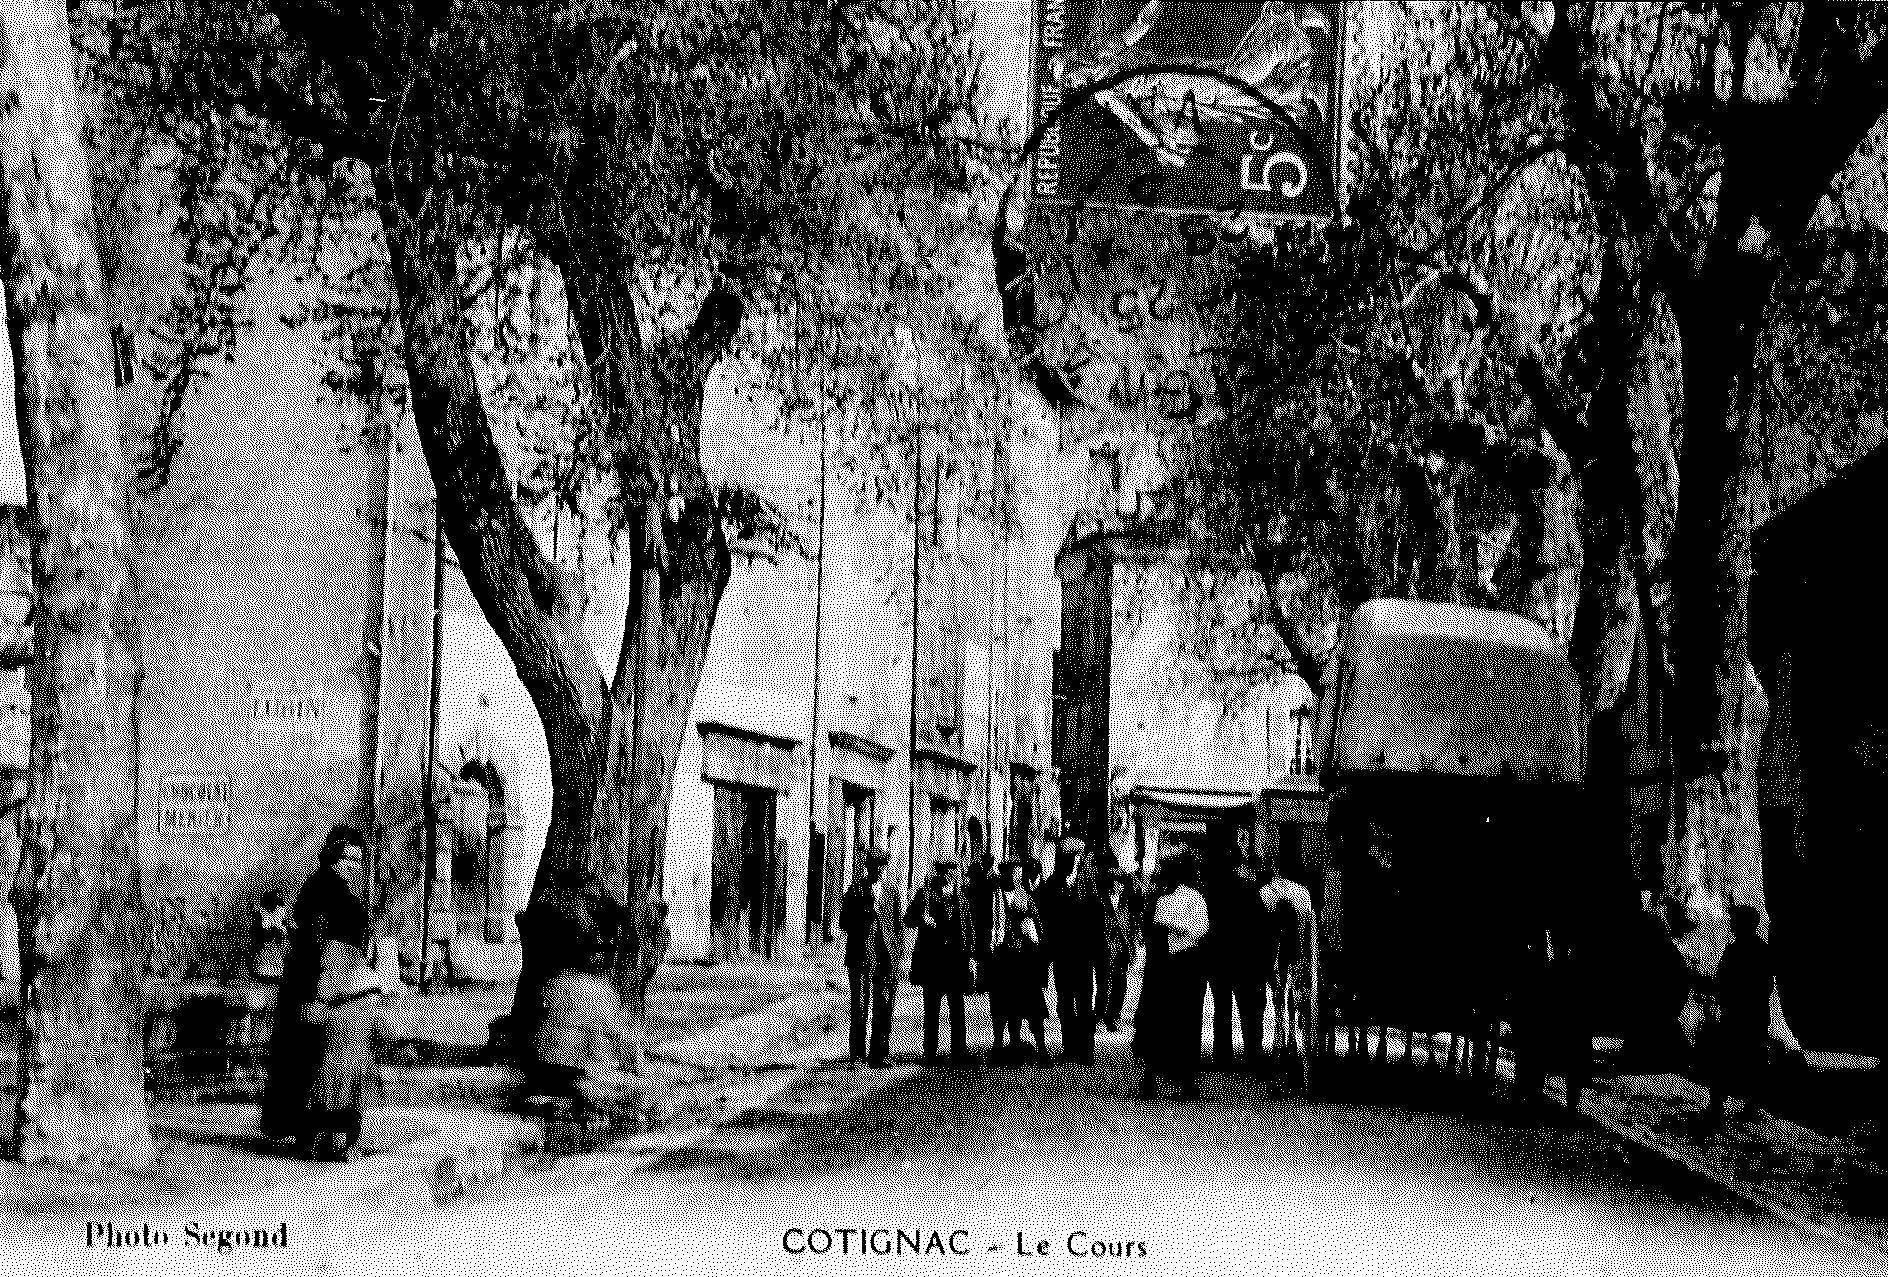 Cotignac, ville sanctuaire